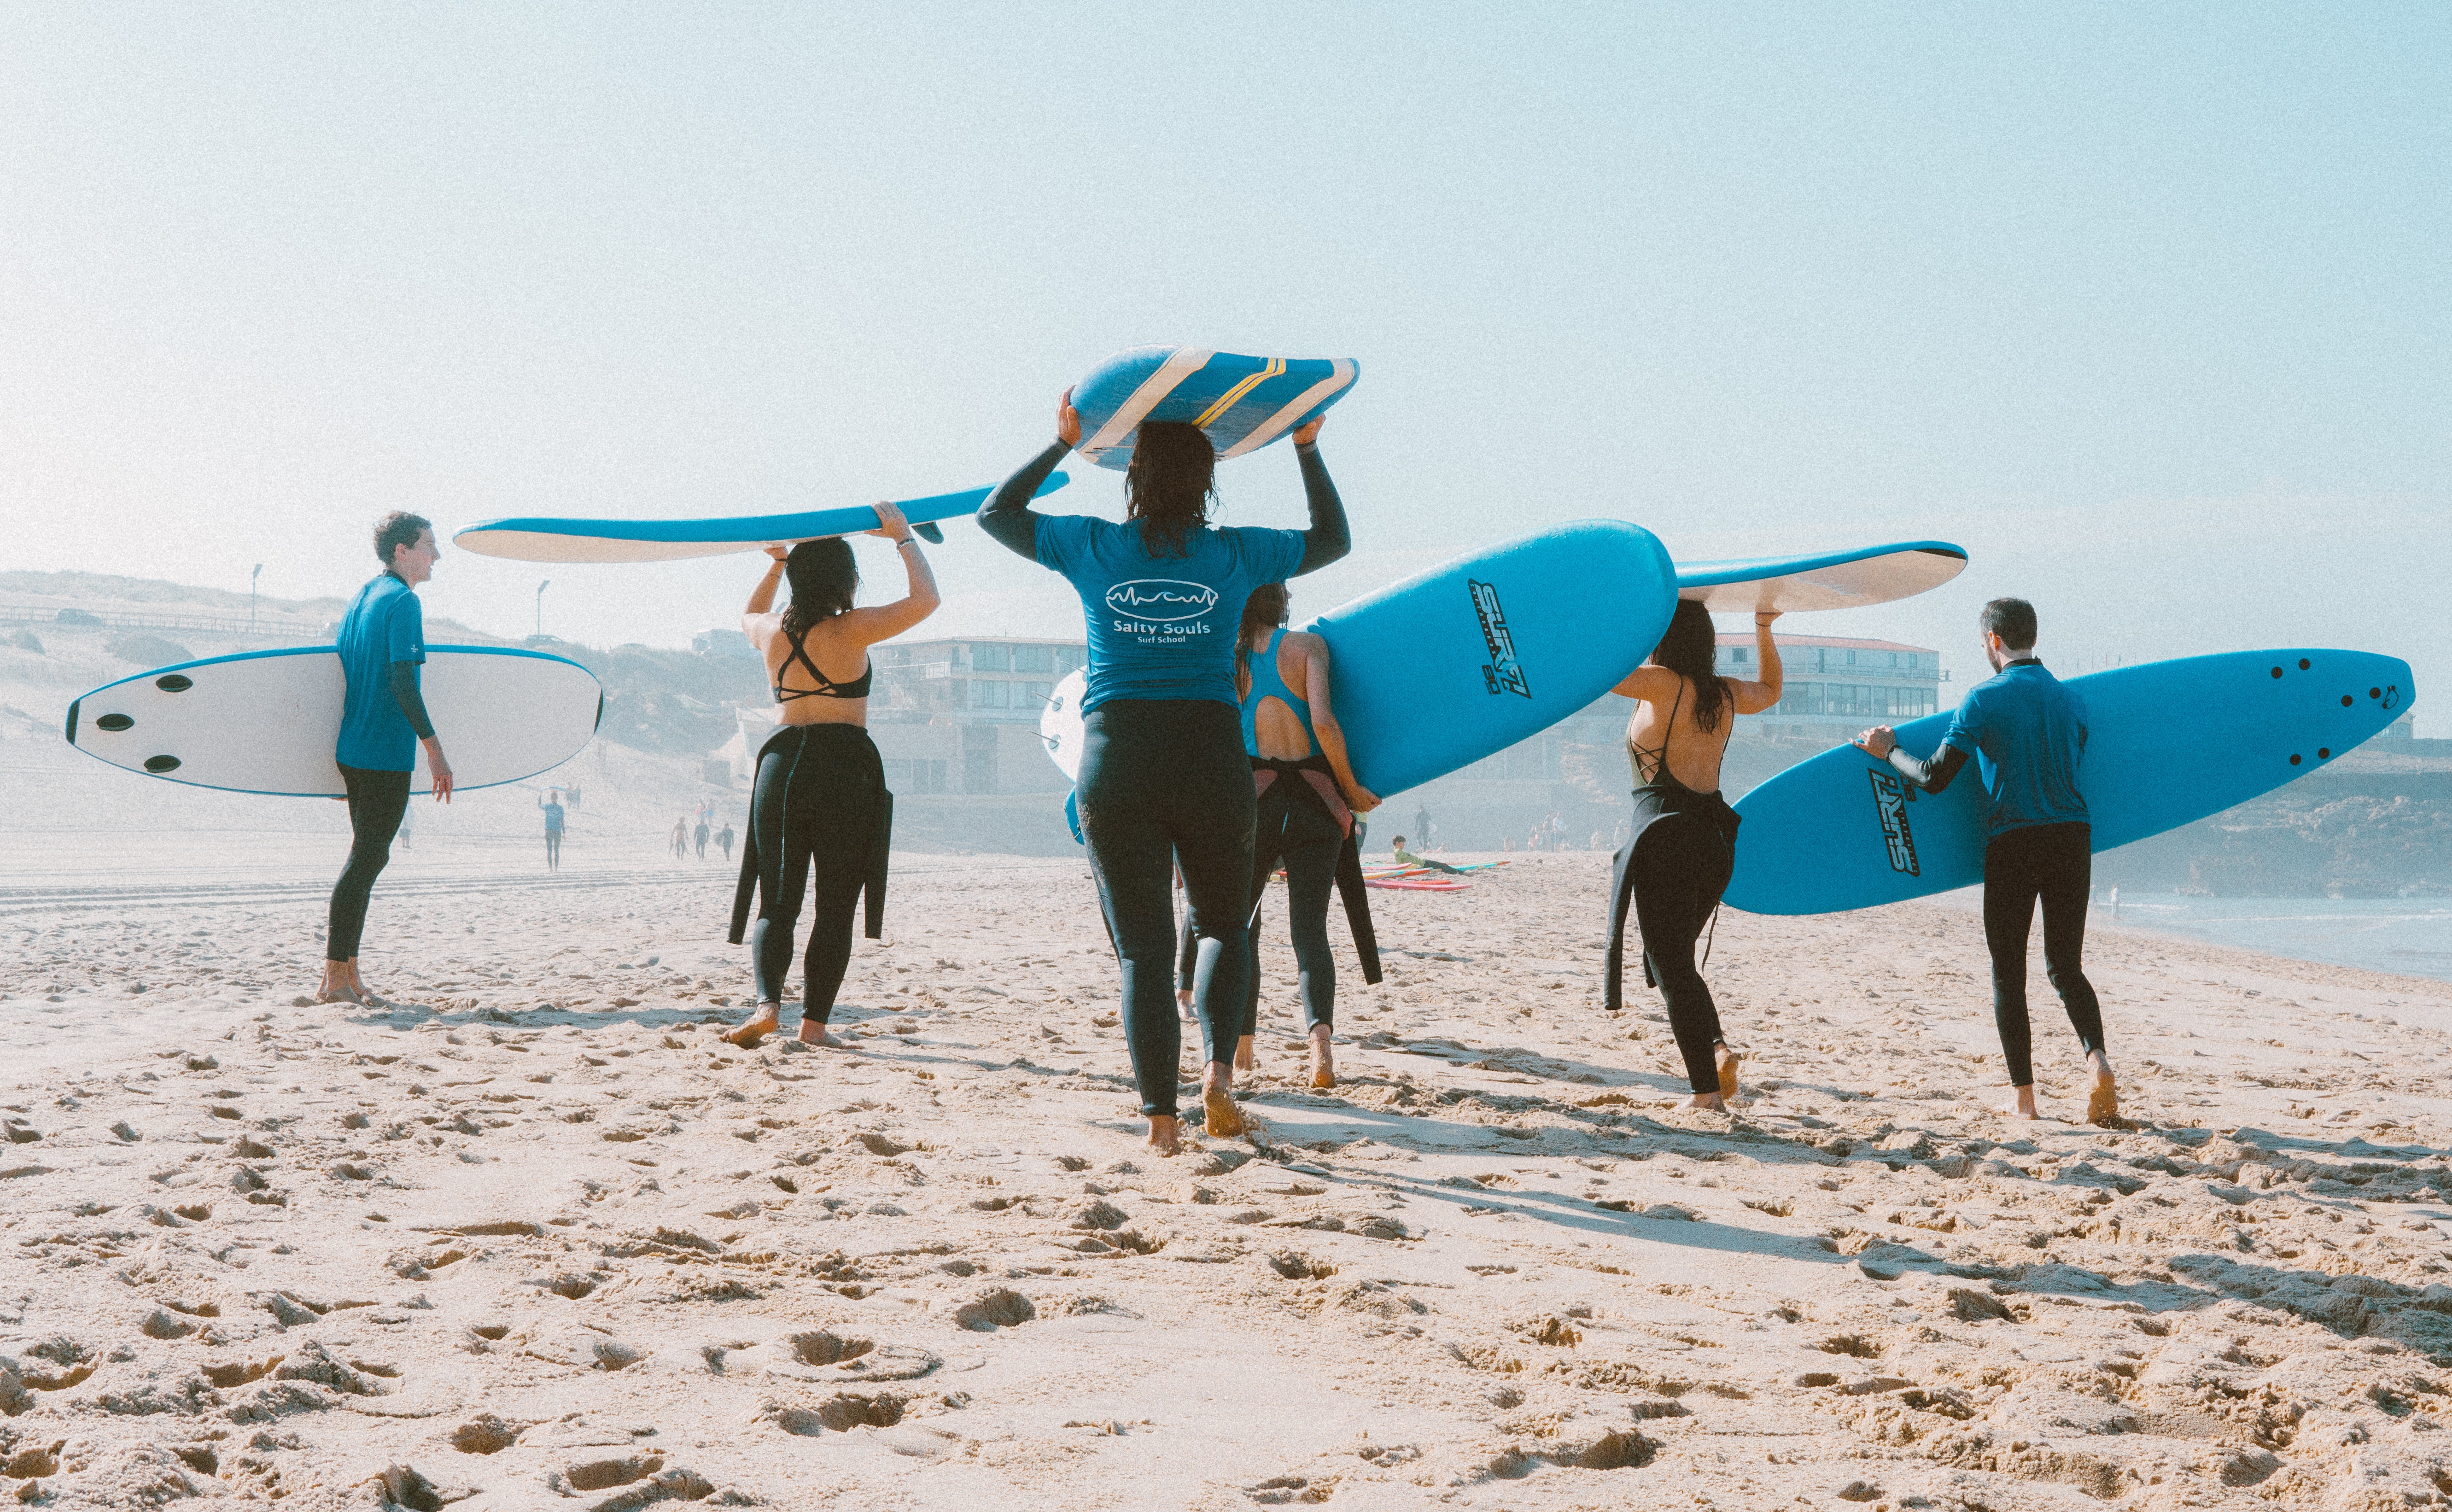 duisternis hebben zich vergist Bron 5 redenen waarom surfen goed is voor je geest en je lichaam - Bedrock